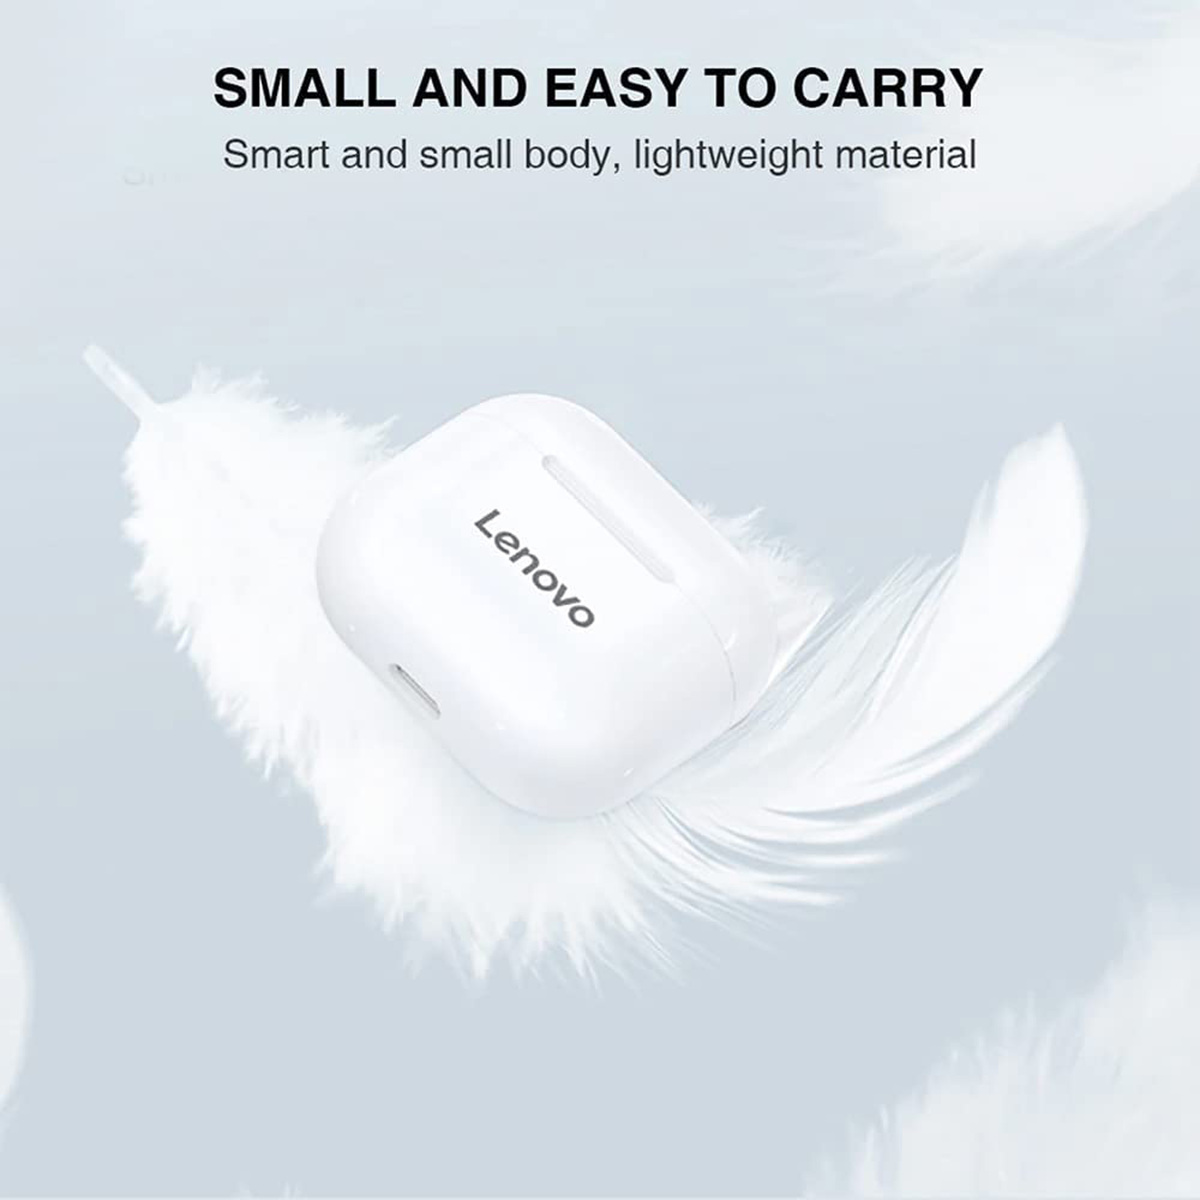 Lenovo True Wireless Stereo Earbuds, LP40, White + Altec Lansing  Mini H20 Bluetooth Speaker, W258N, Black